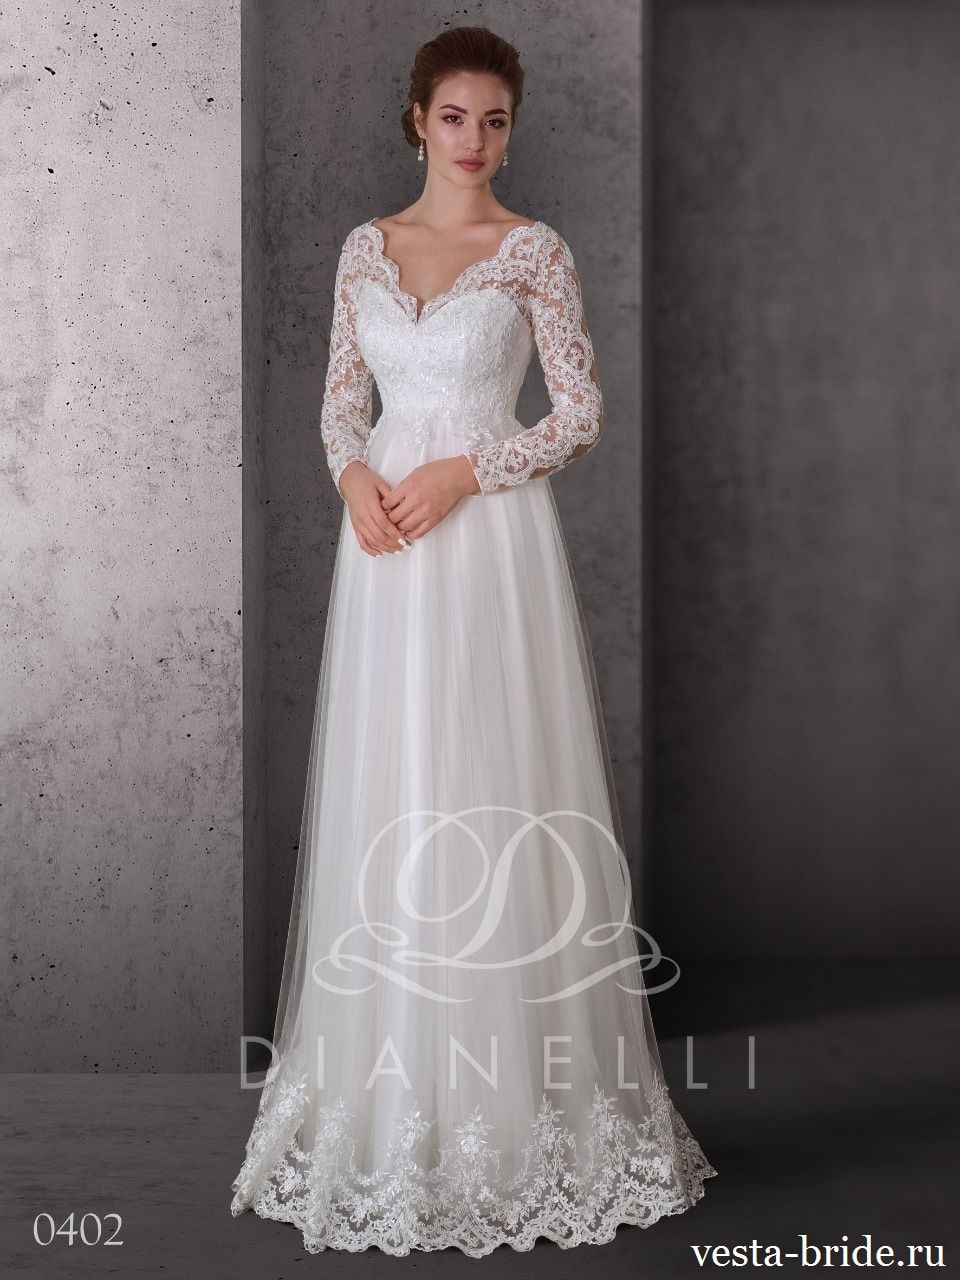 120dana201 min Закрытое свадебное платье с рукавом Dana